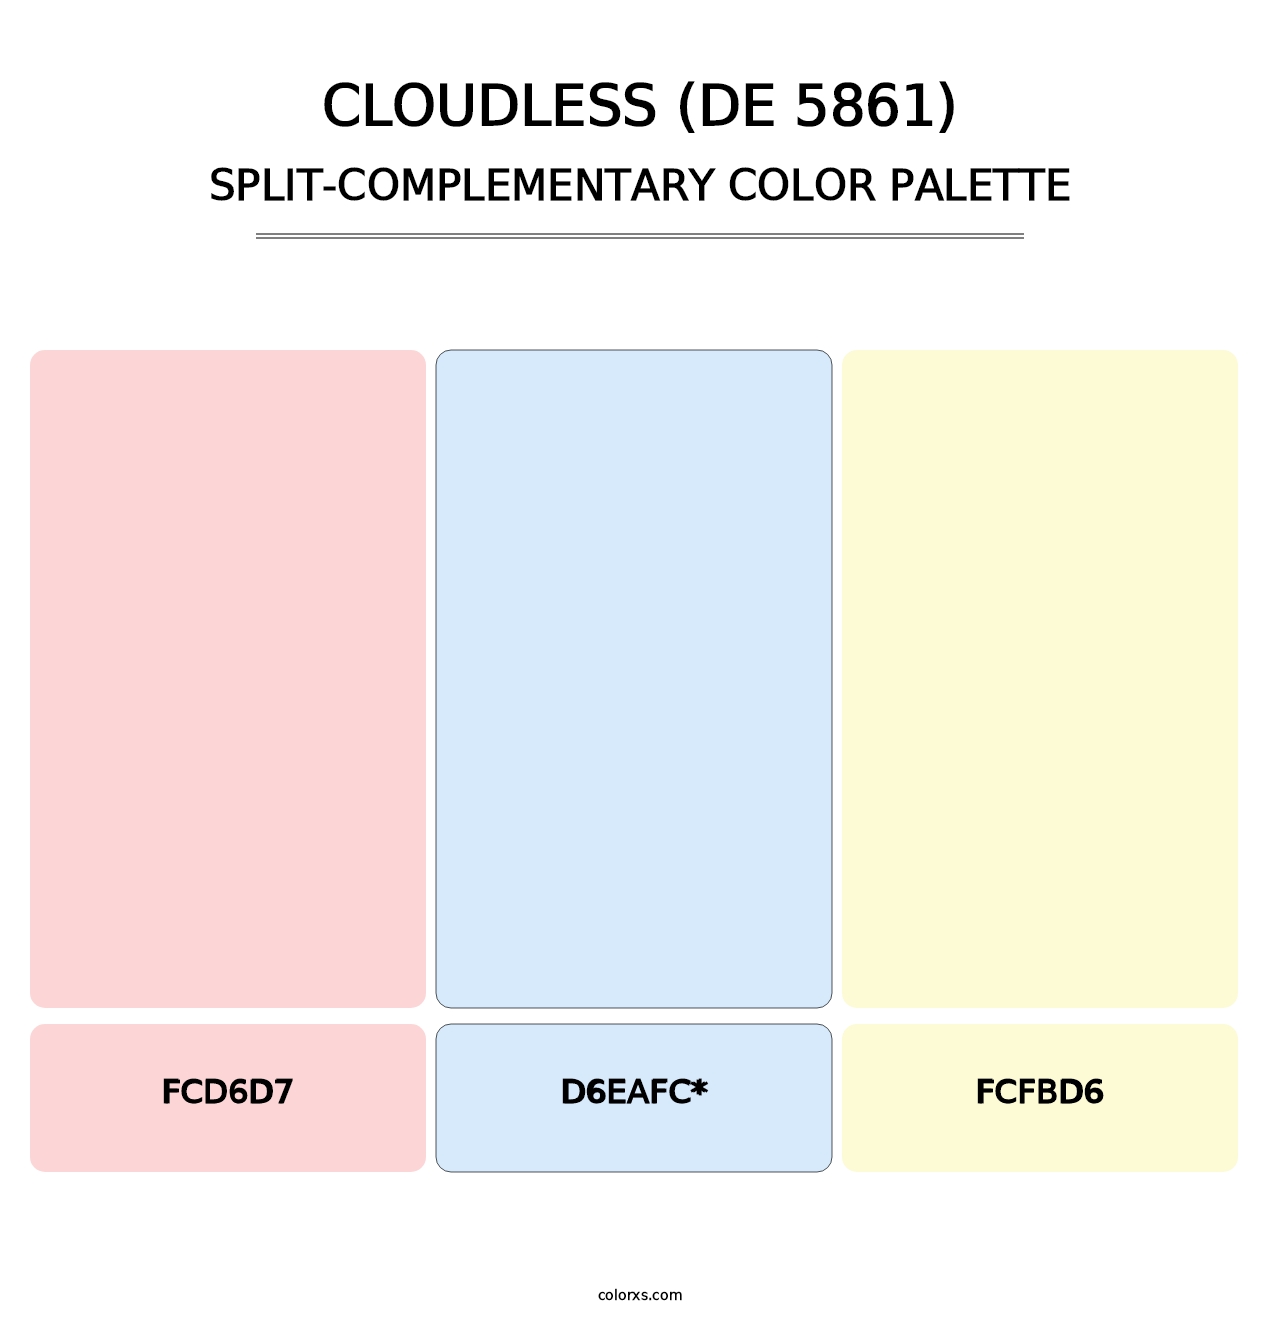 Cloudless (DE 5861) - Split-Complementary Color Palette